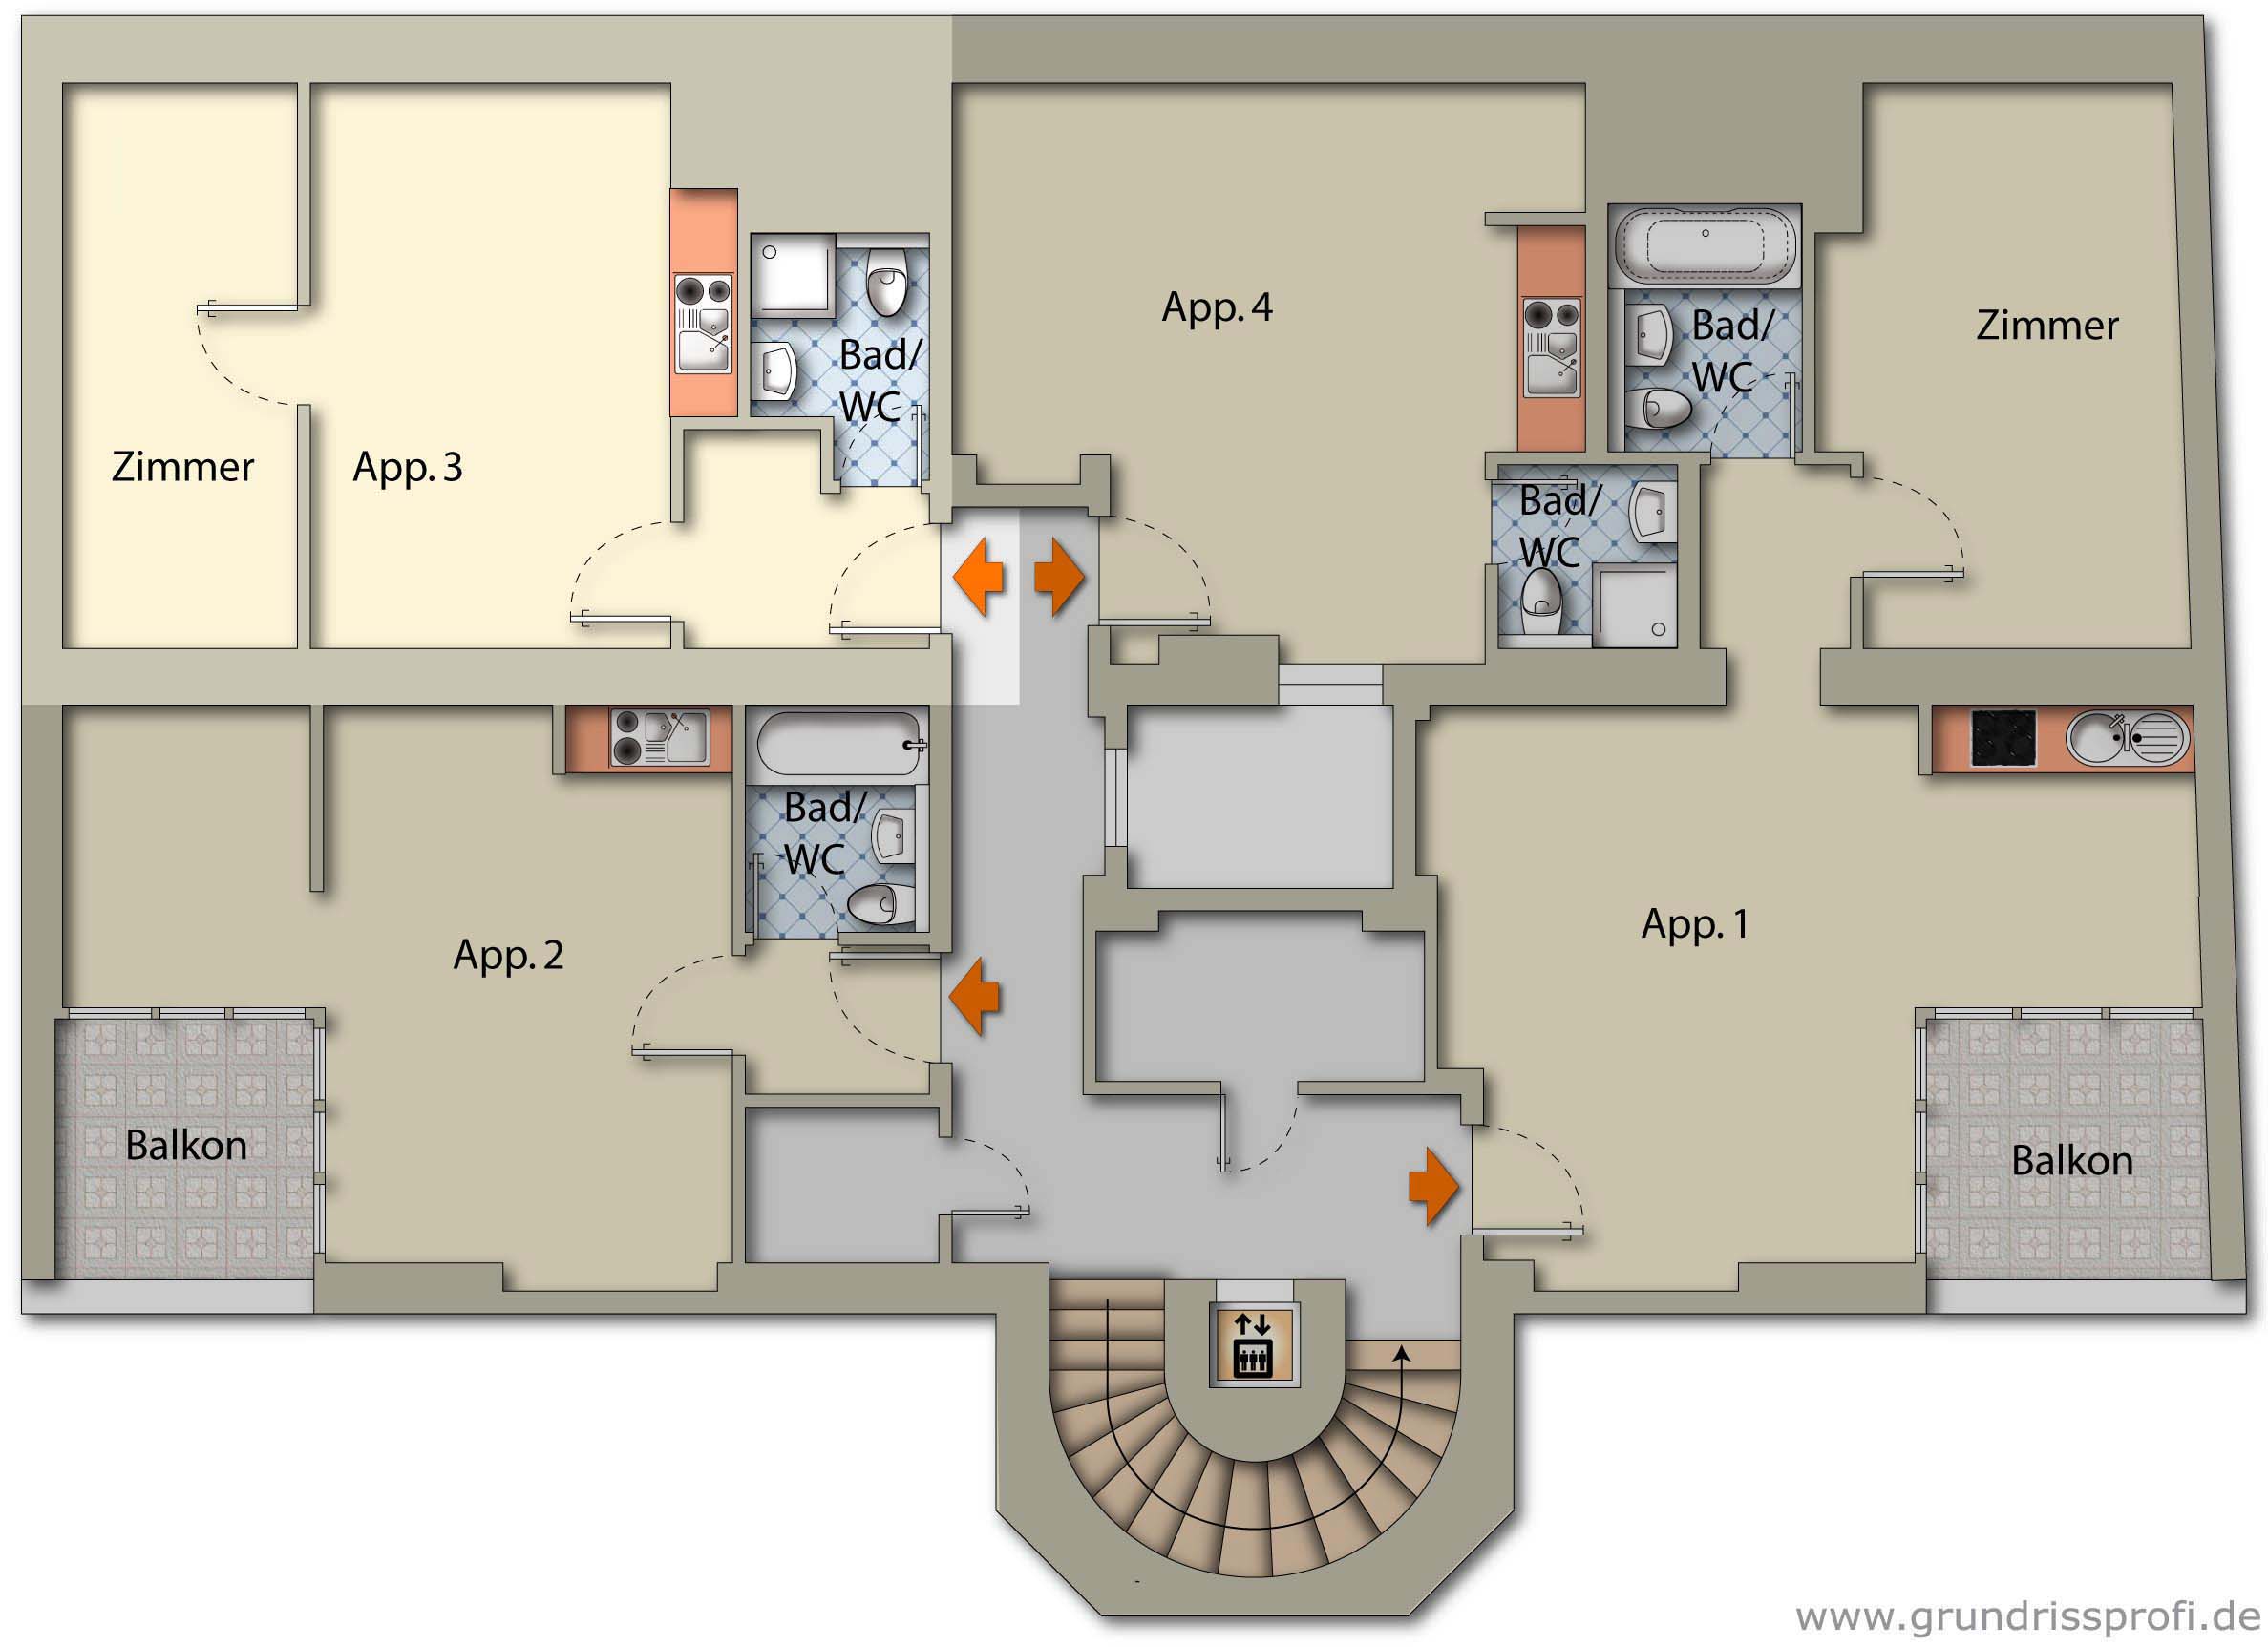 Apartment 3 Ground plan floor